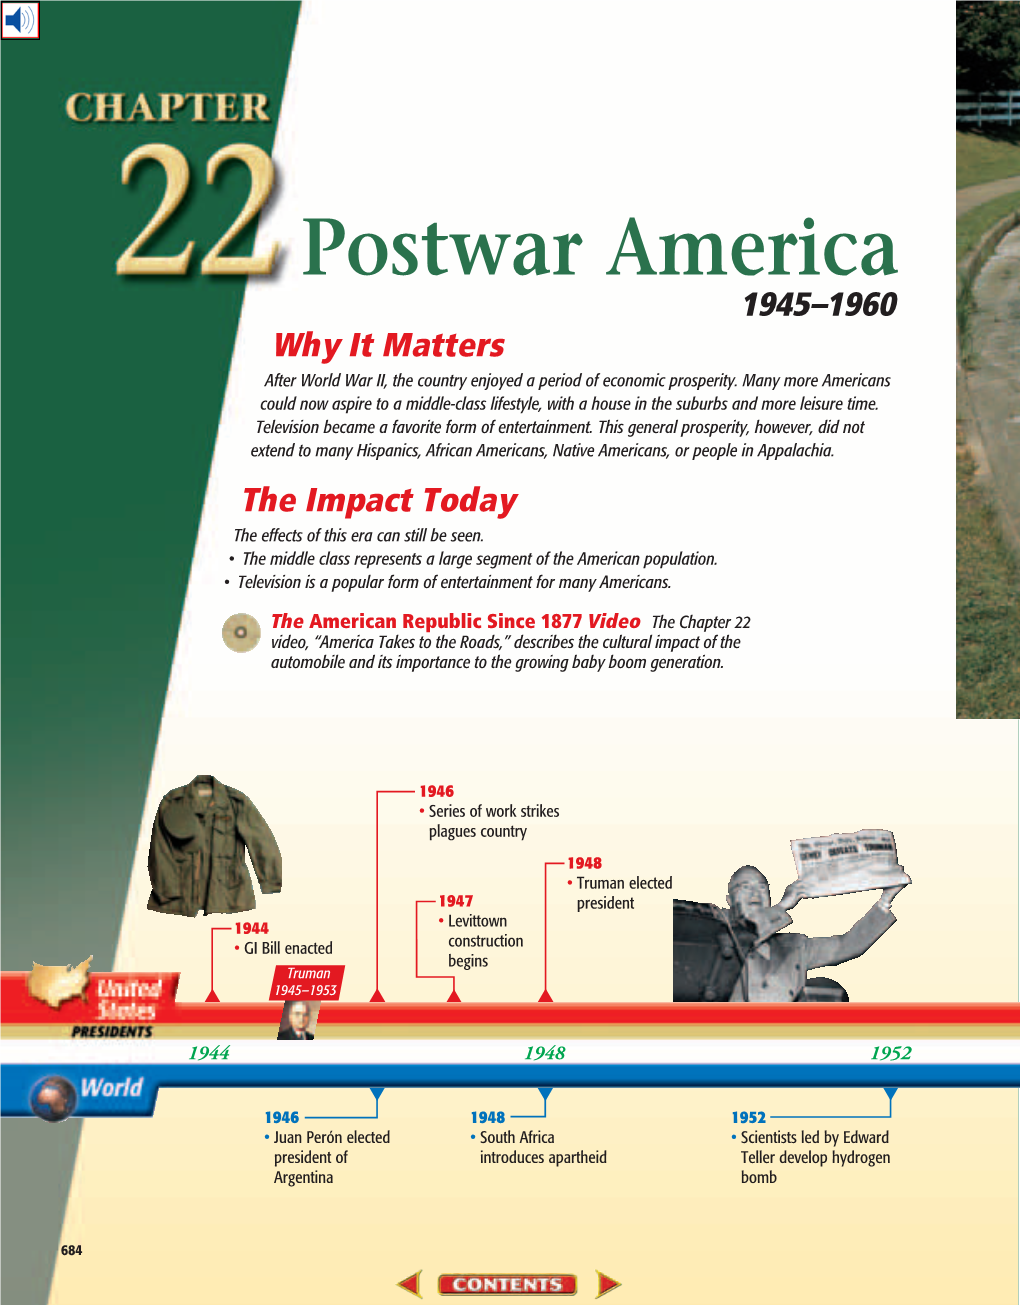 Chapter 22: Postwar America, 1945-1960